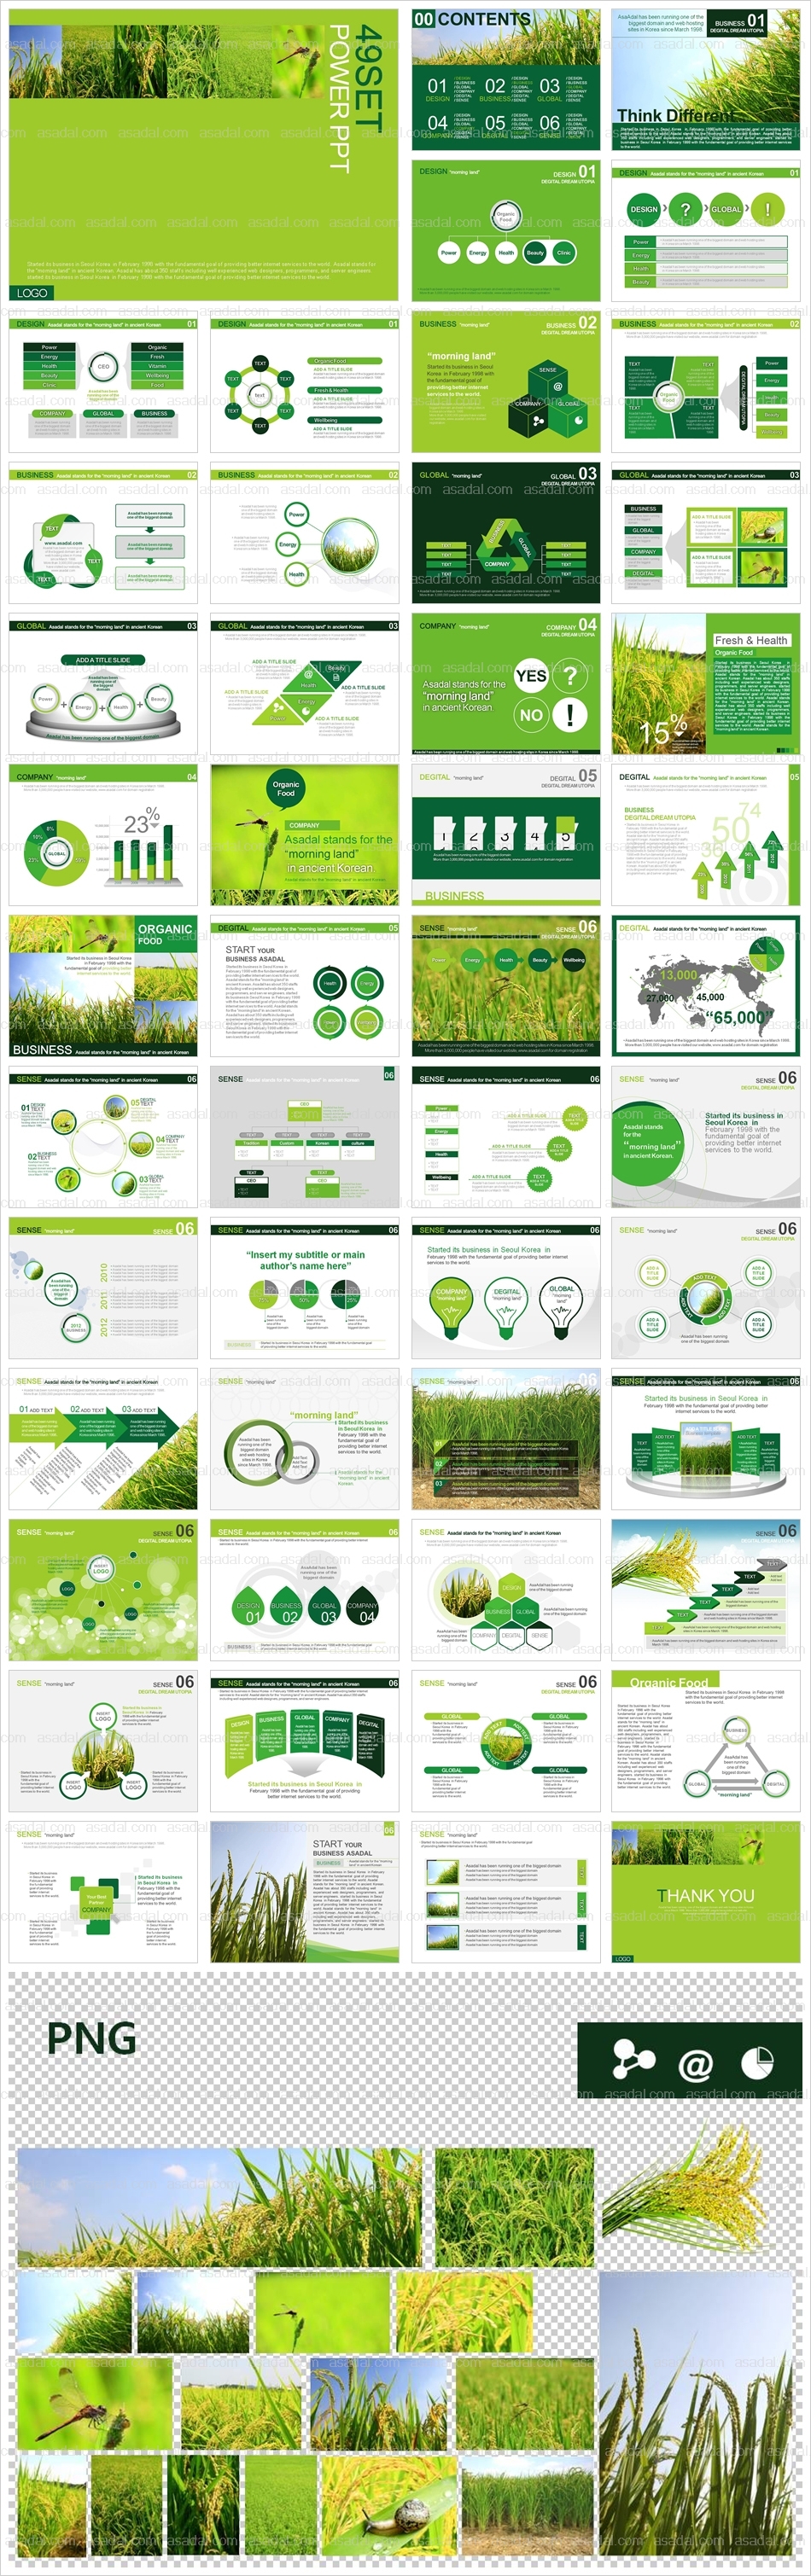 식물 디자인 PPT 템플릿 세트2_친환경 쌀과 농촌_b0067(하이피티)